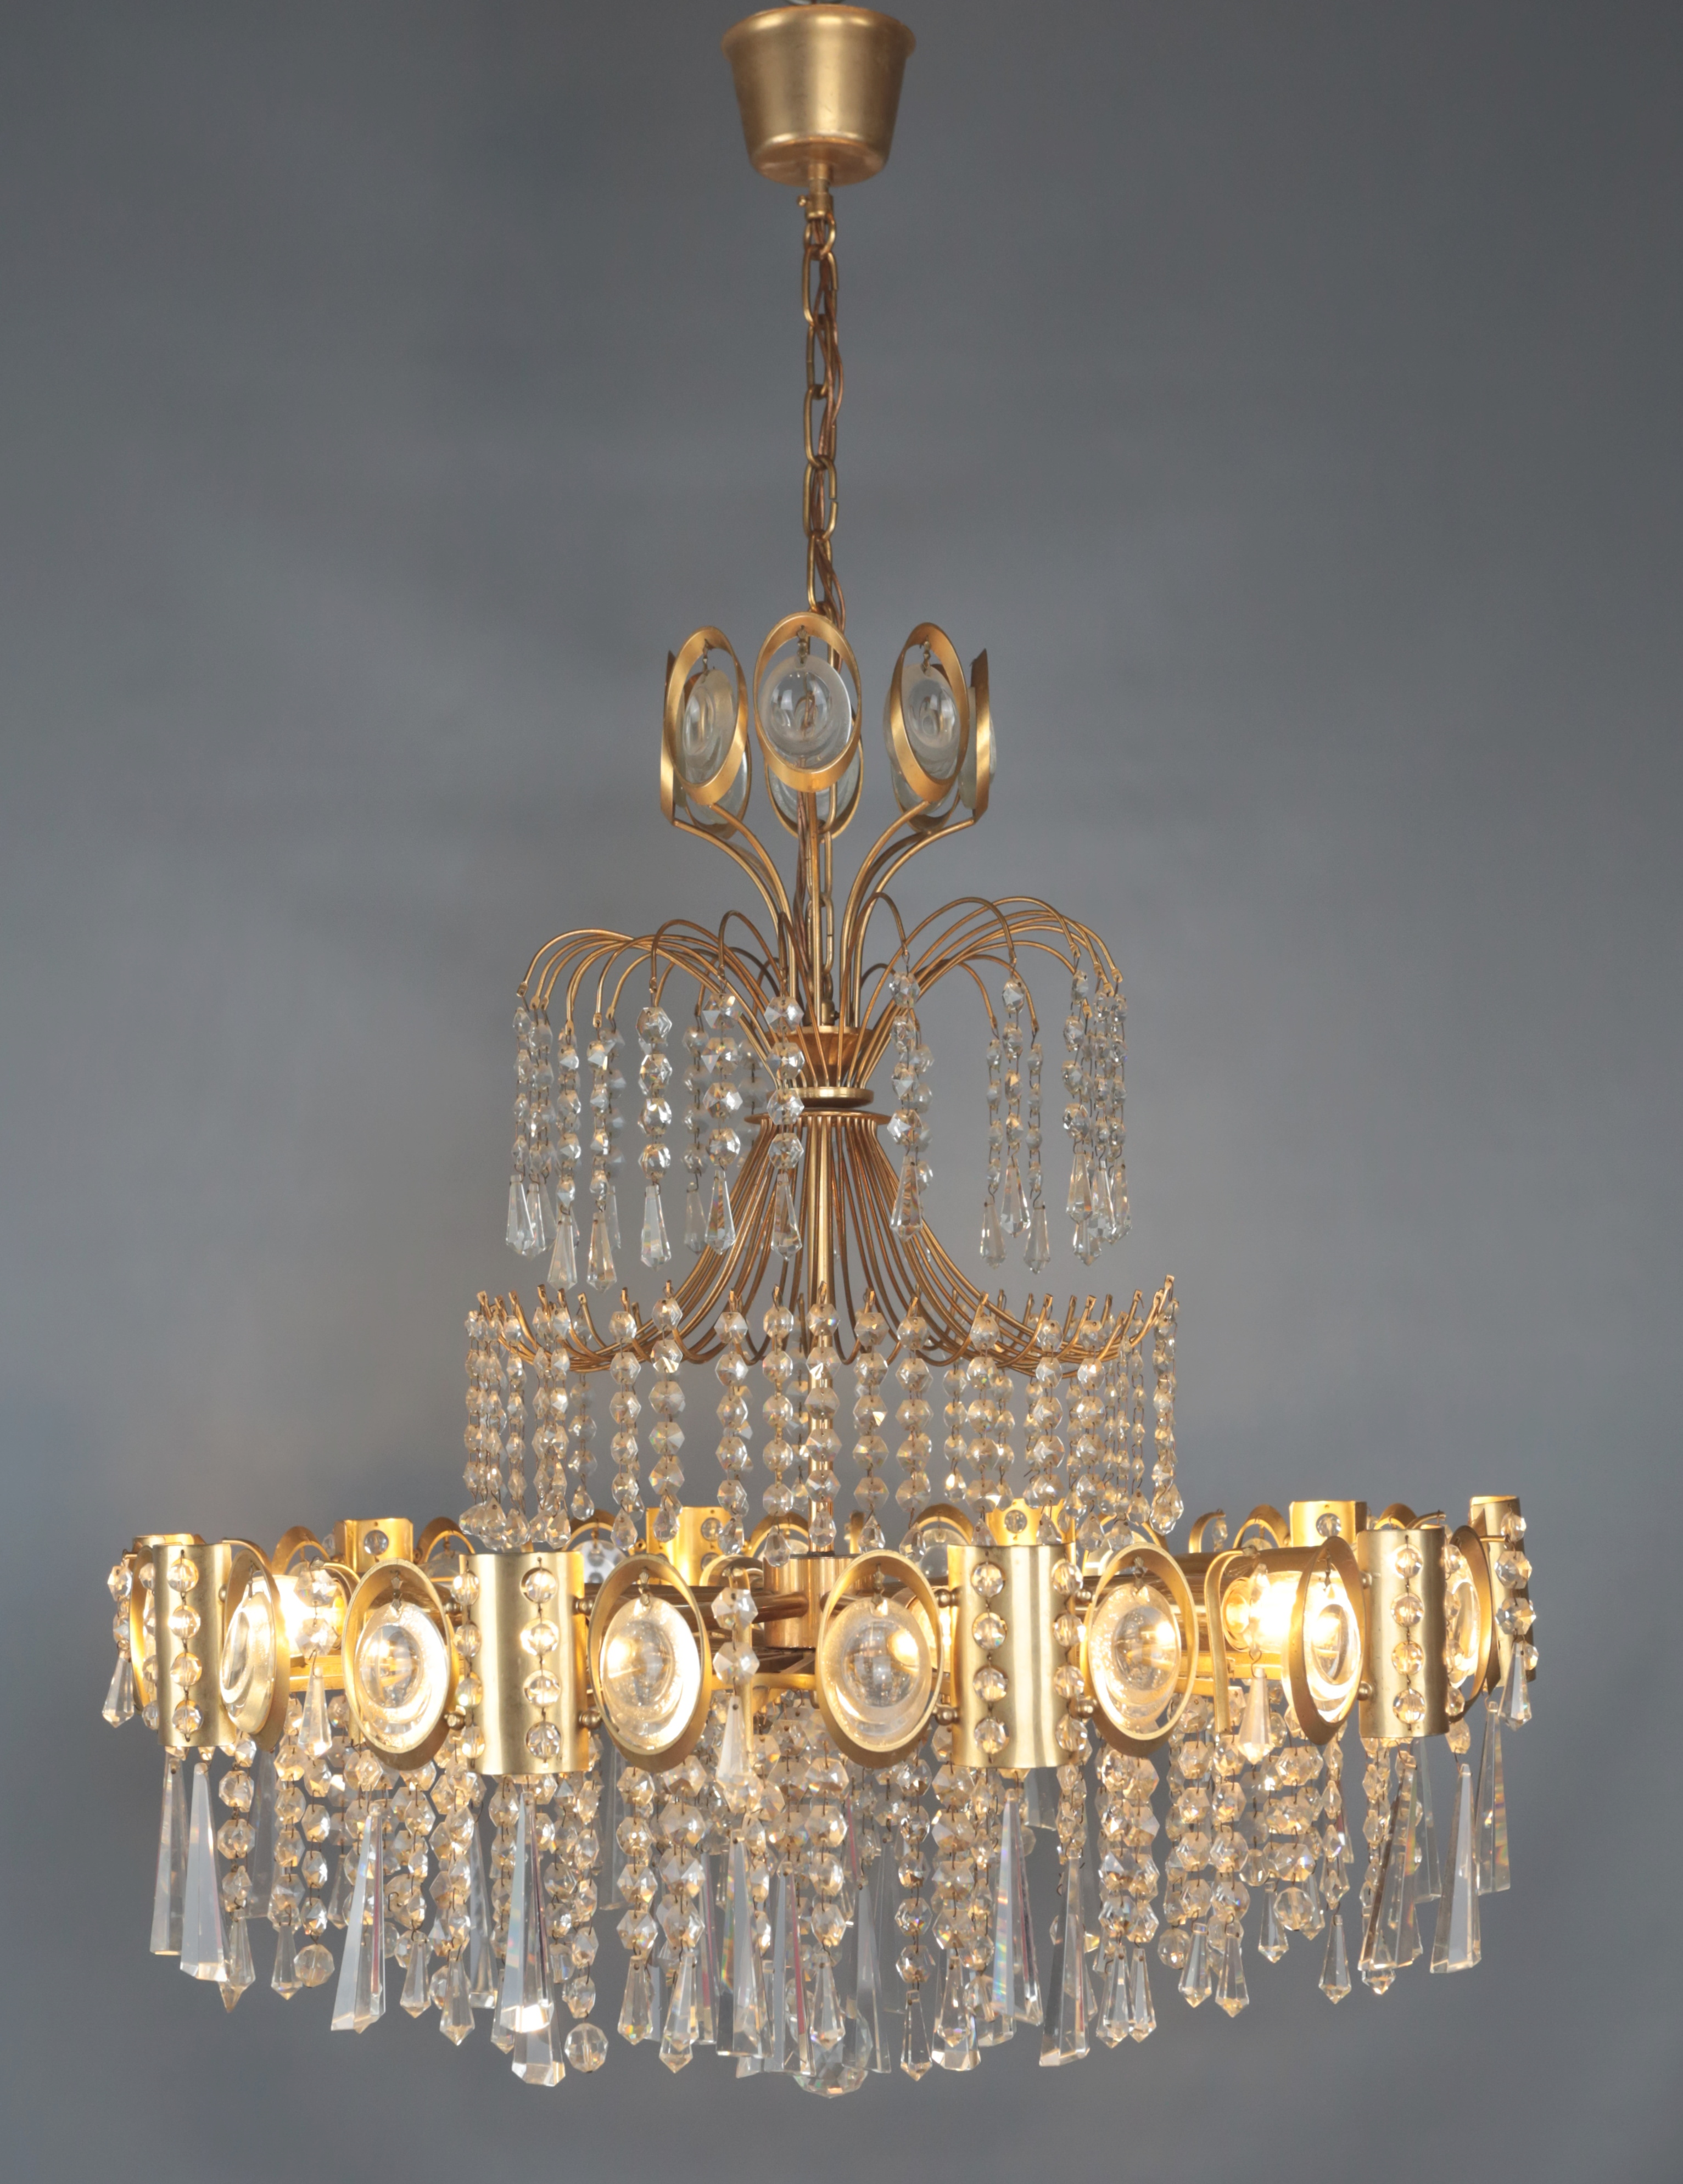 Designový vintage lustr s kaskádovými ověsy